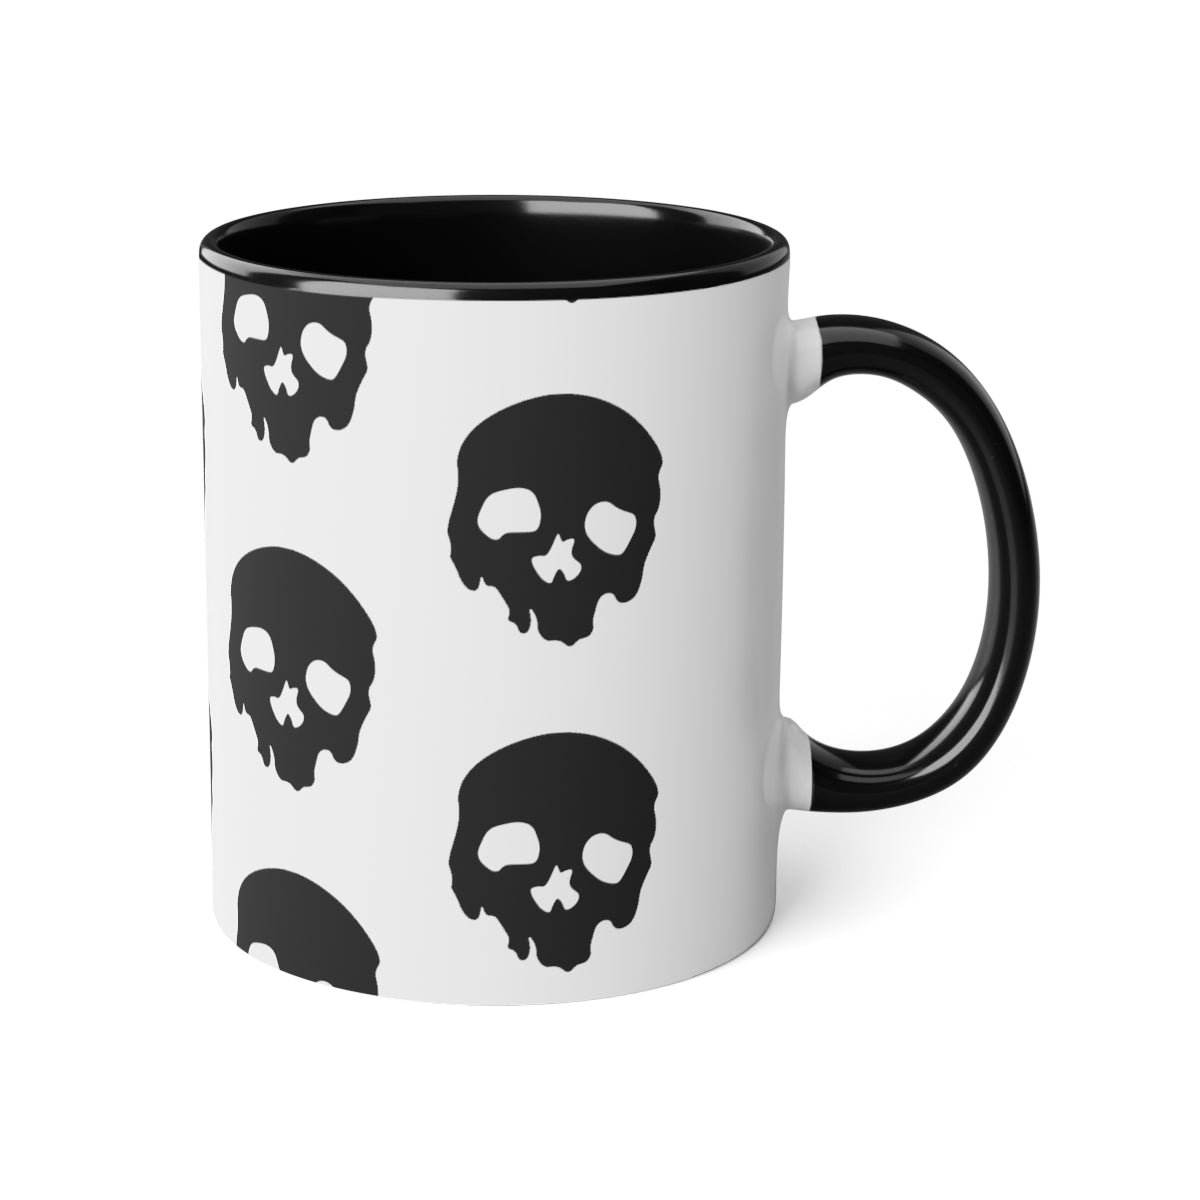 Skull Print Coffee Mug, 11oz